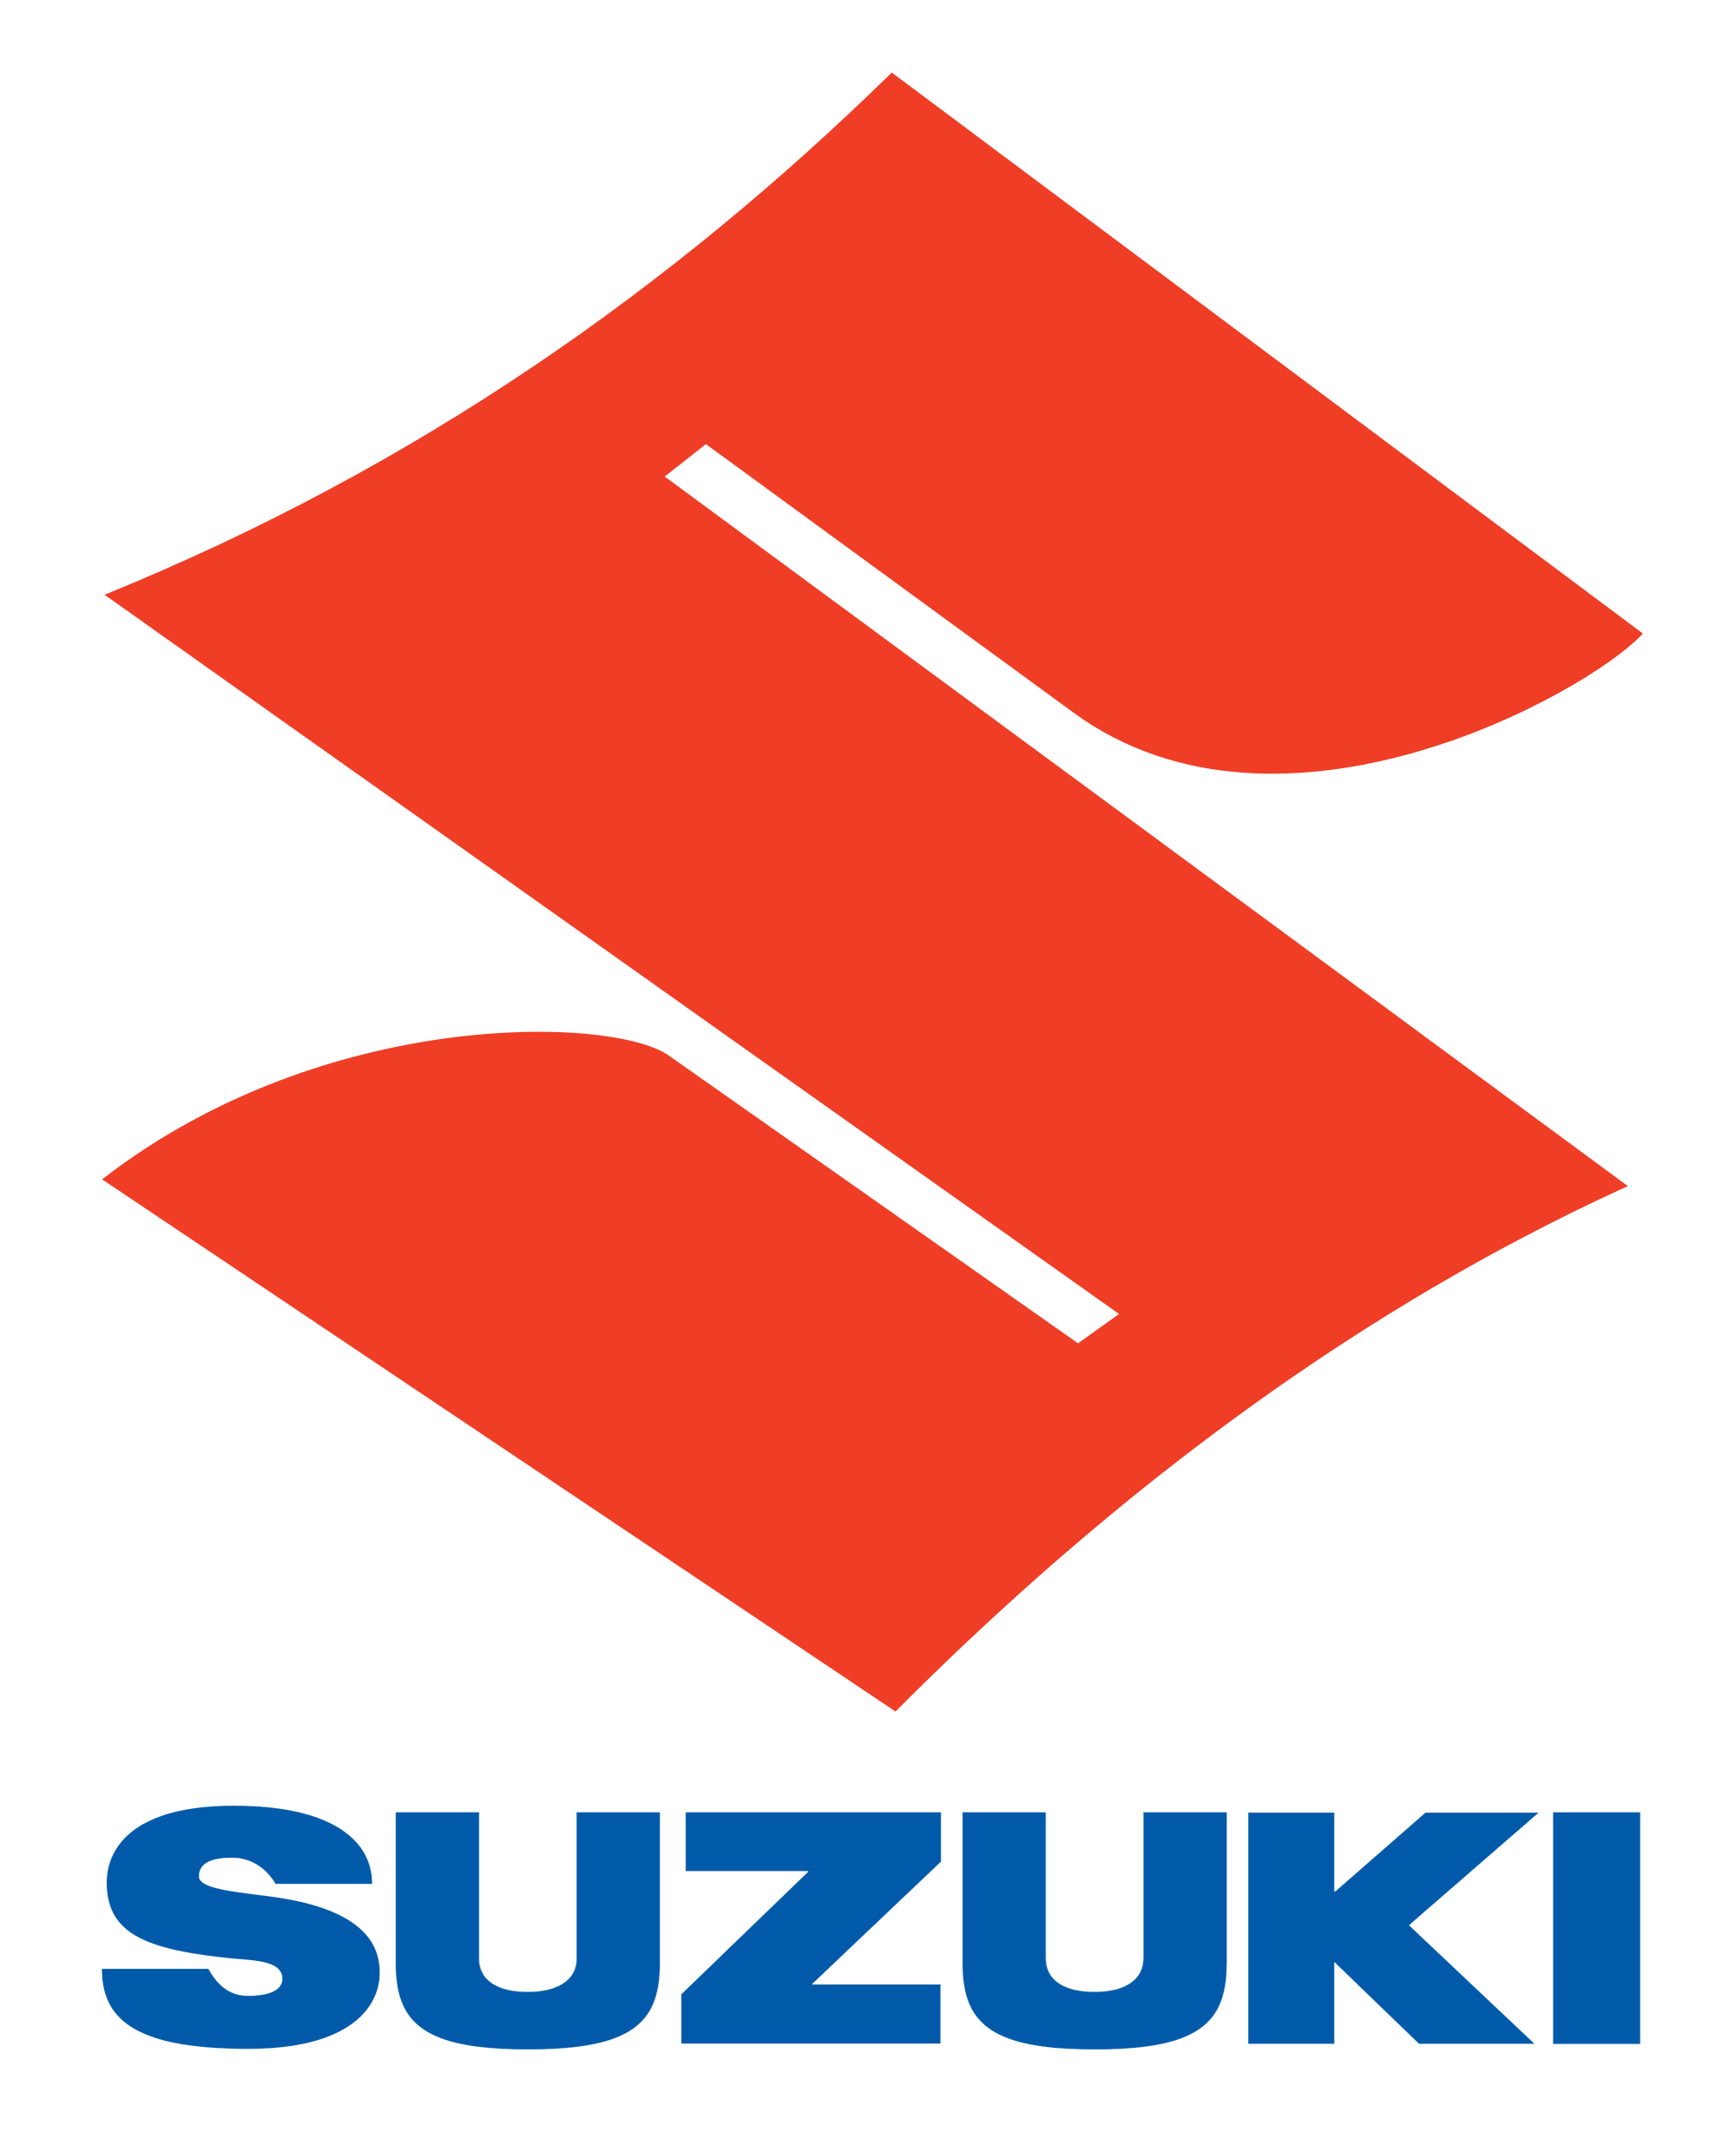 Retrouvez la gamme complètes des pièces et accessoires Suzuki. Achat sécurisé et pas cher. Livraison rapide.